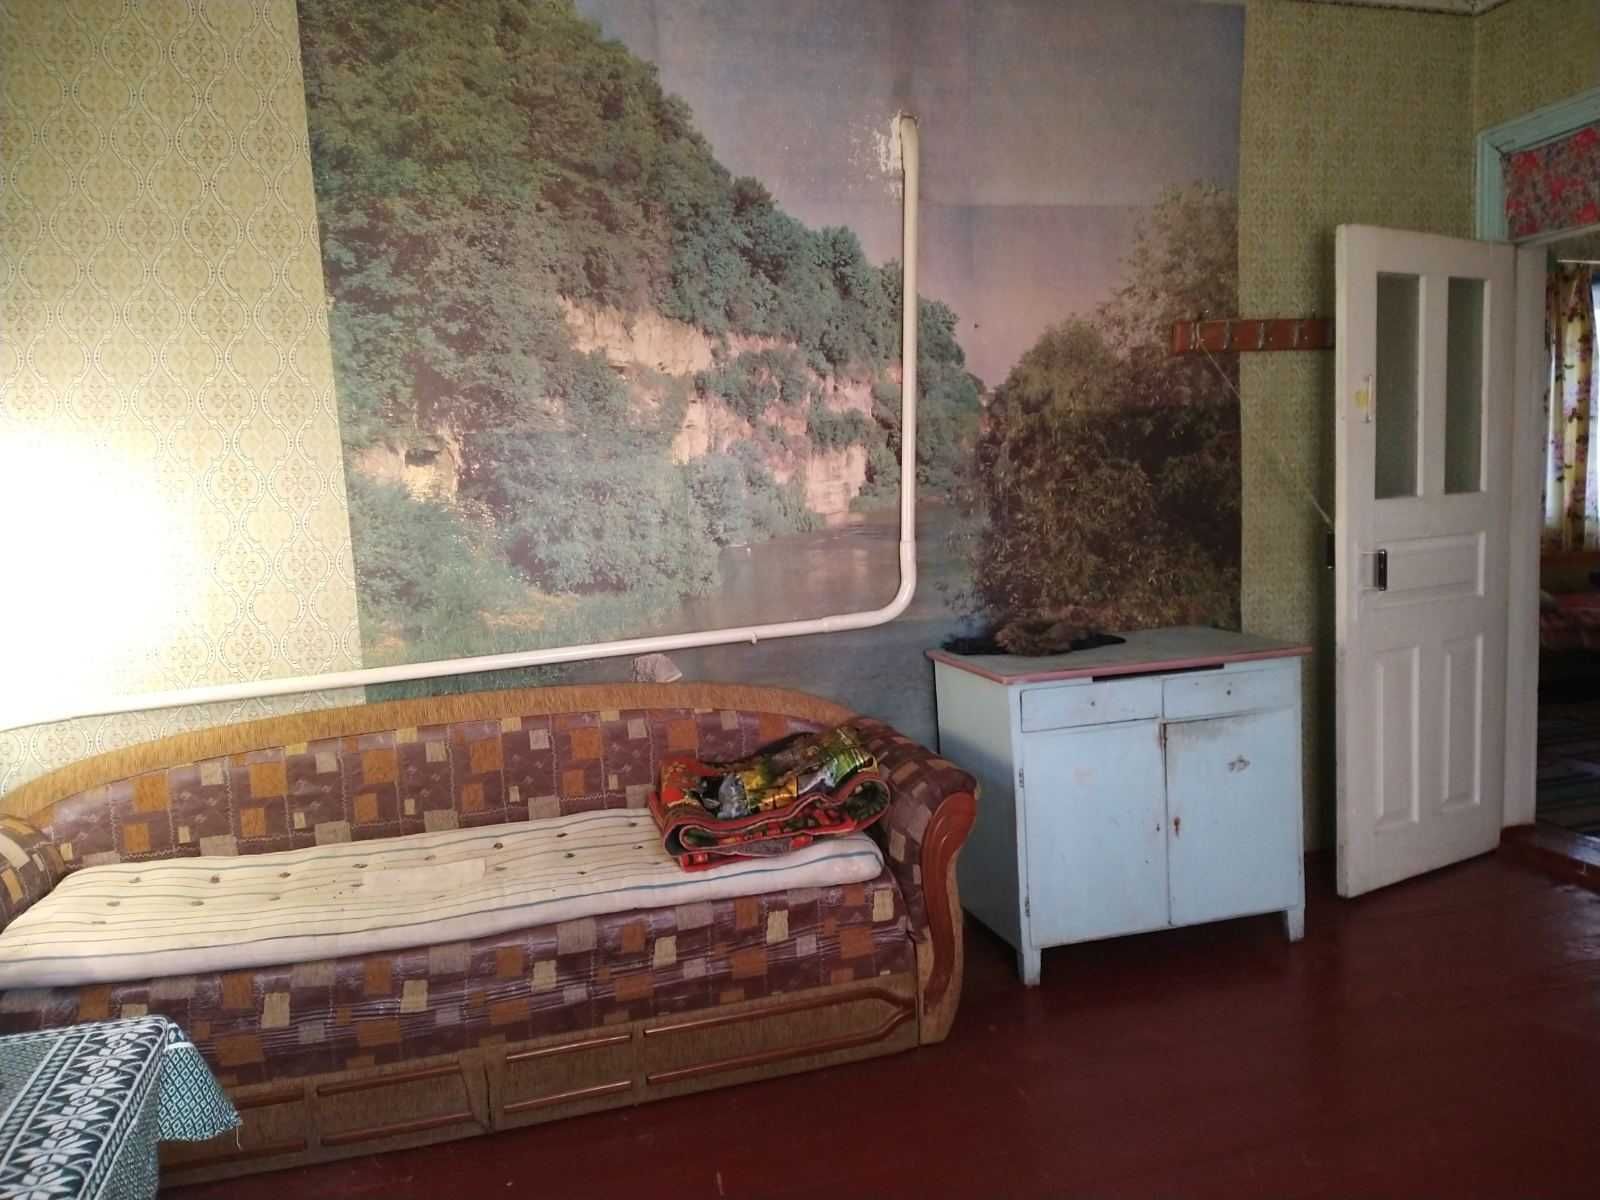 Продам будинок в селі Лецьки Бориспільський район, Київської області